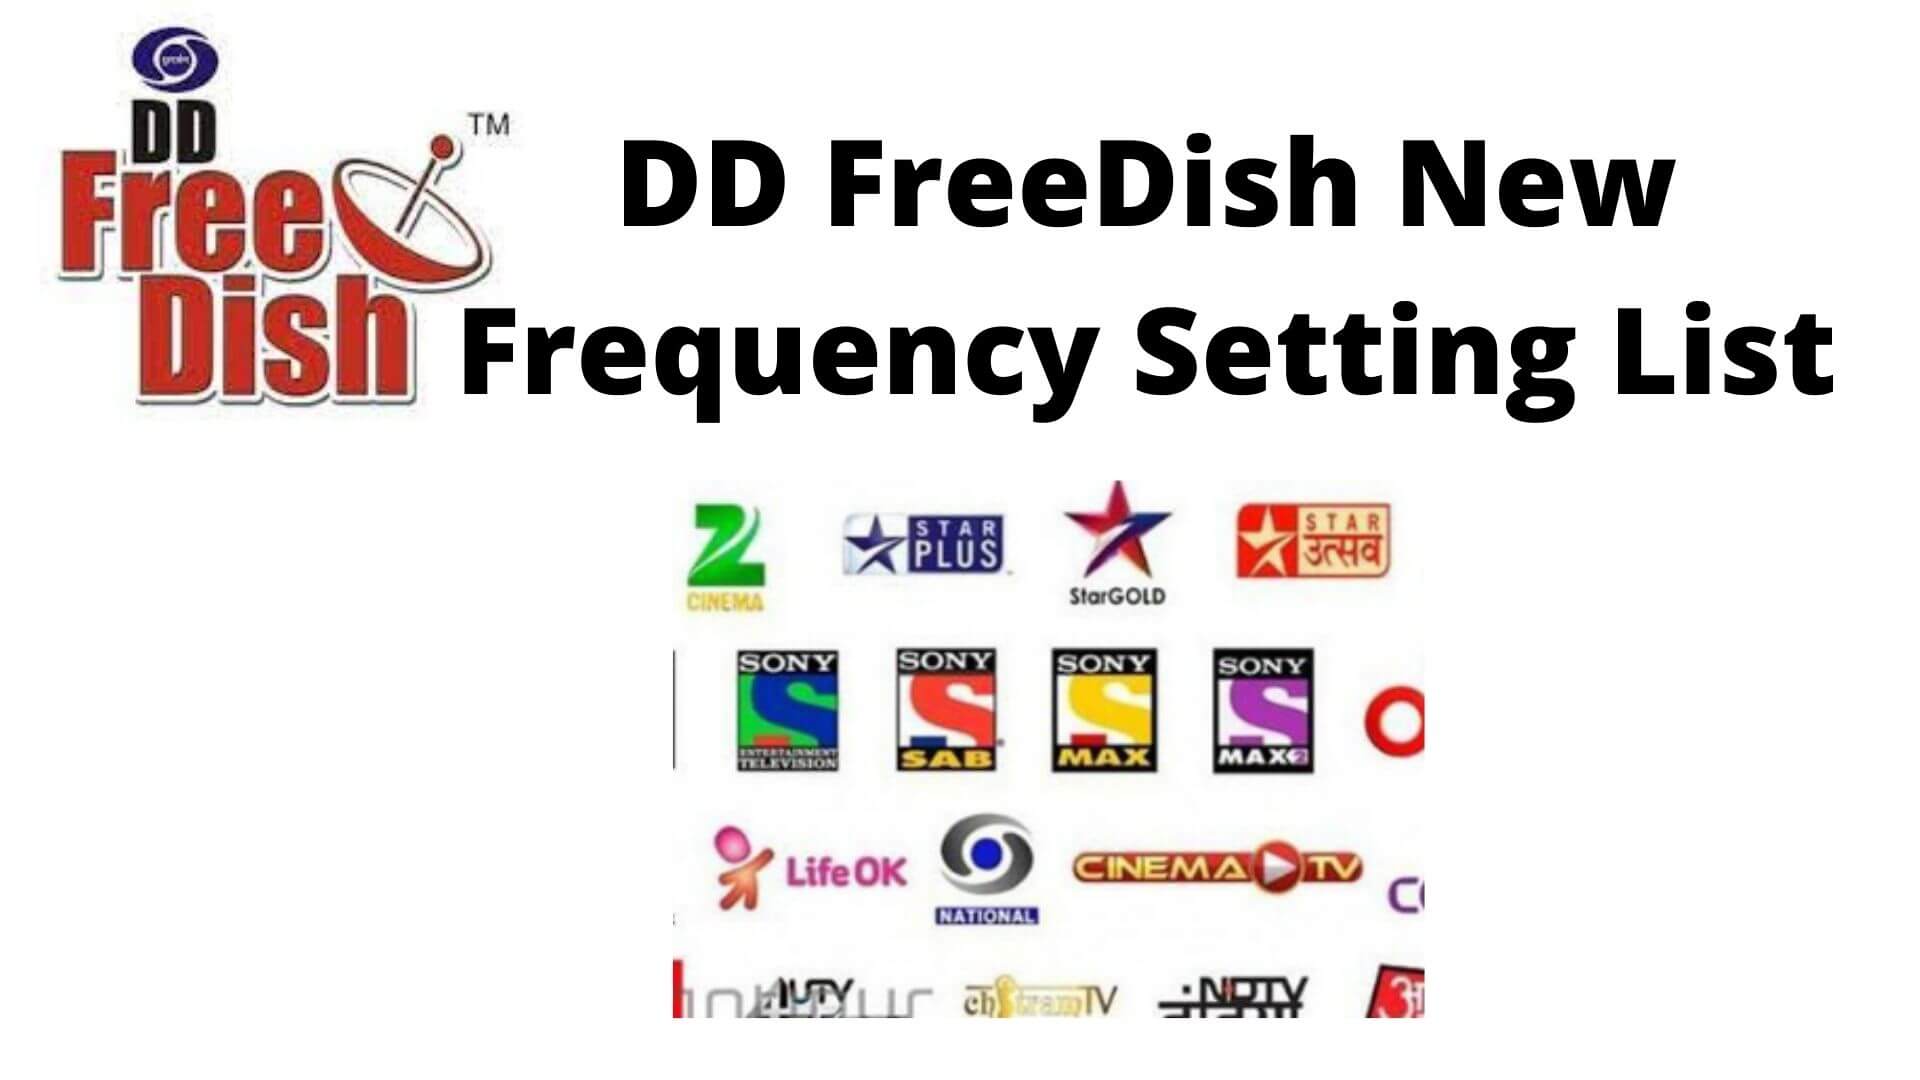 DD FreeDish Frequency Setting